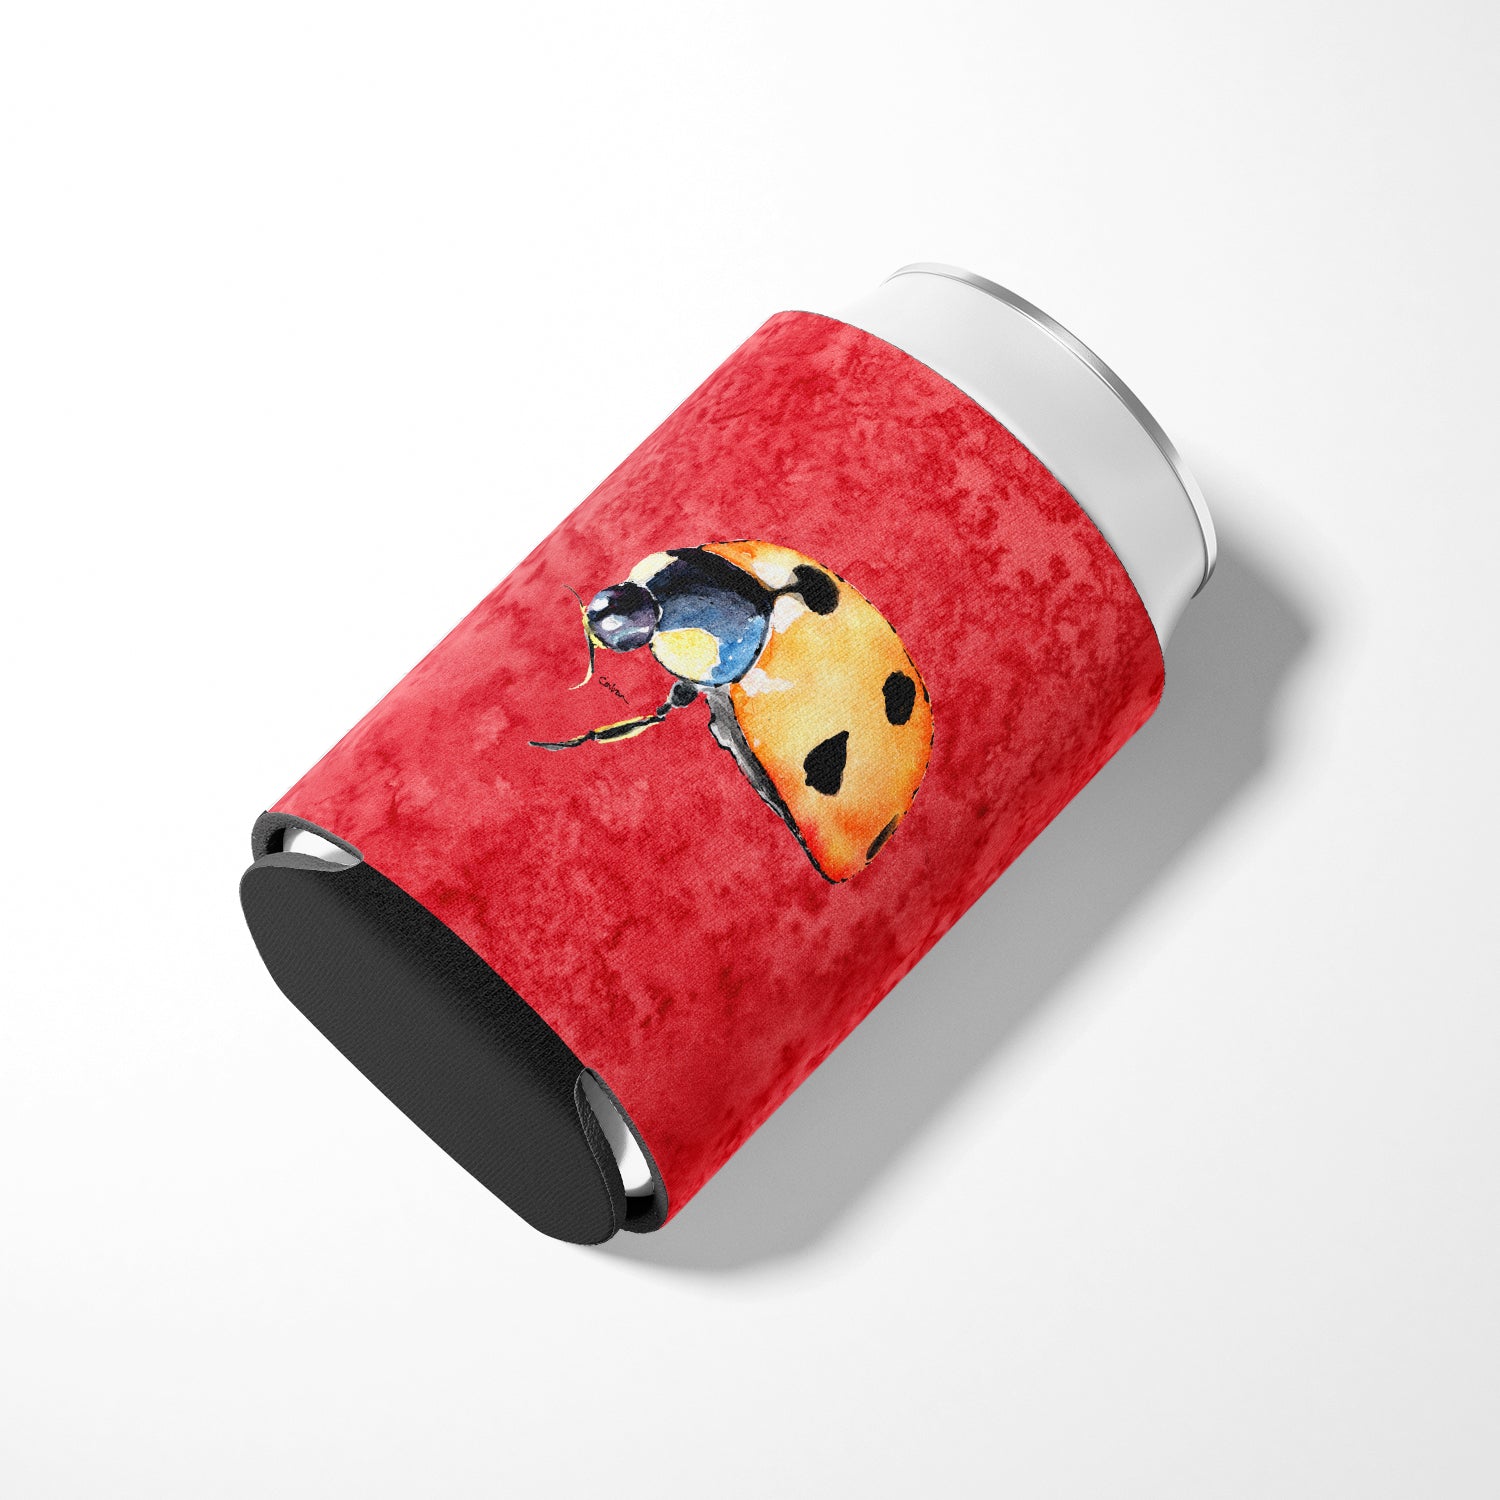 Lady Bug on Red Can or Bottle Beverage Insulator Hugger